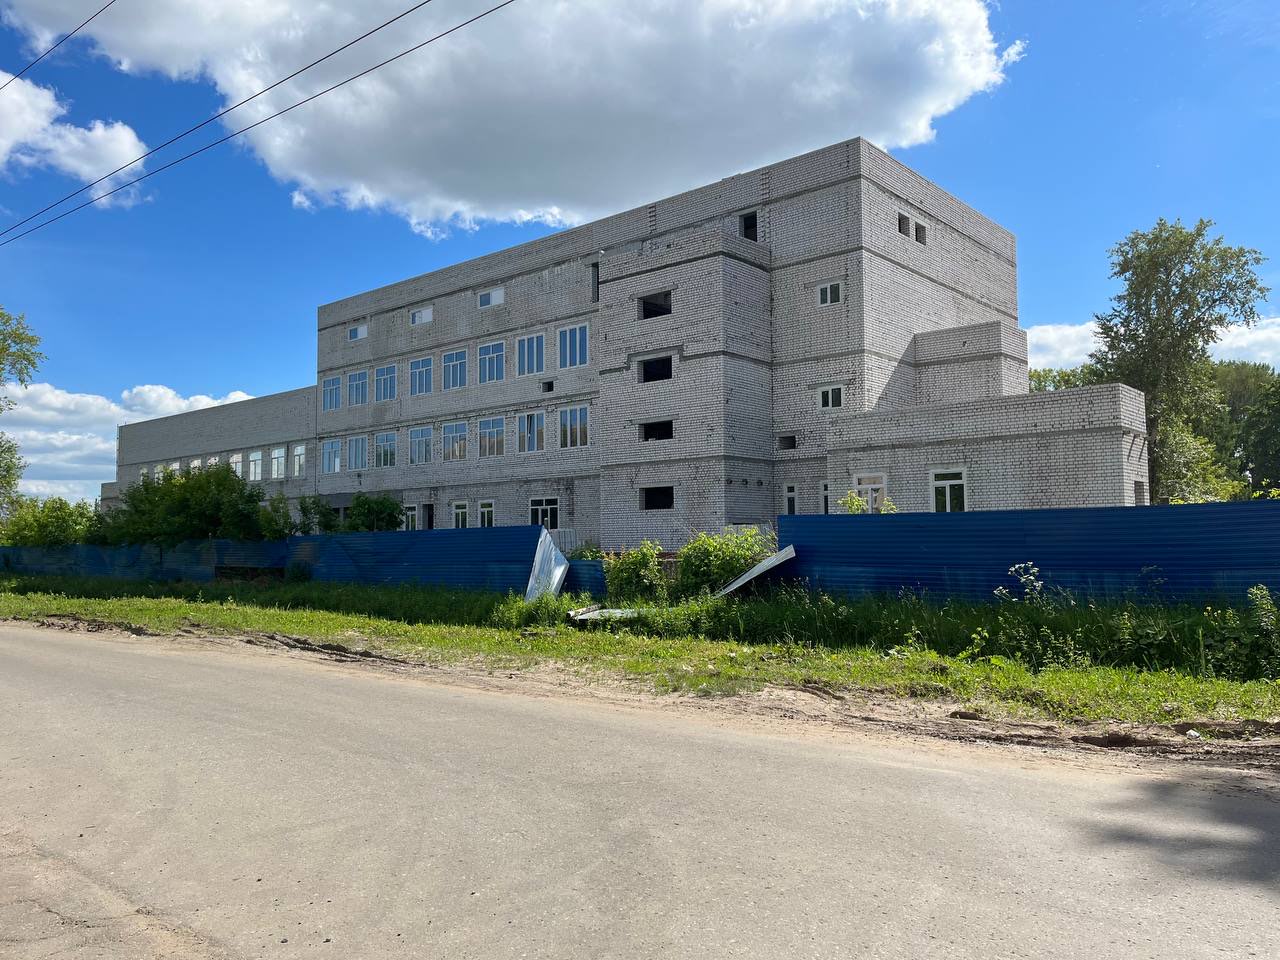 Пристрои к трем школам Нижнего Новгорода появятся к 2026 году - фото 1